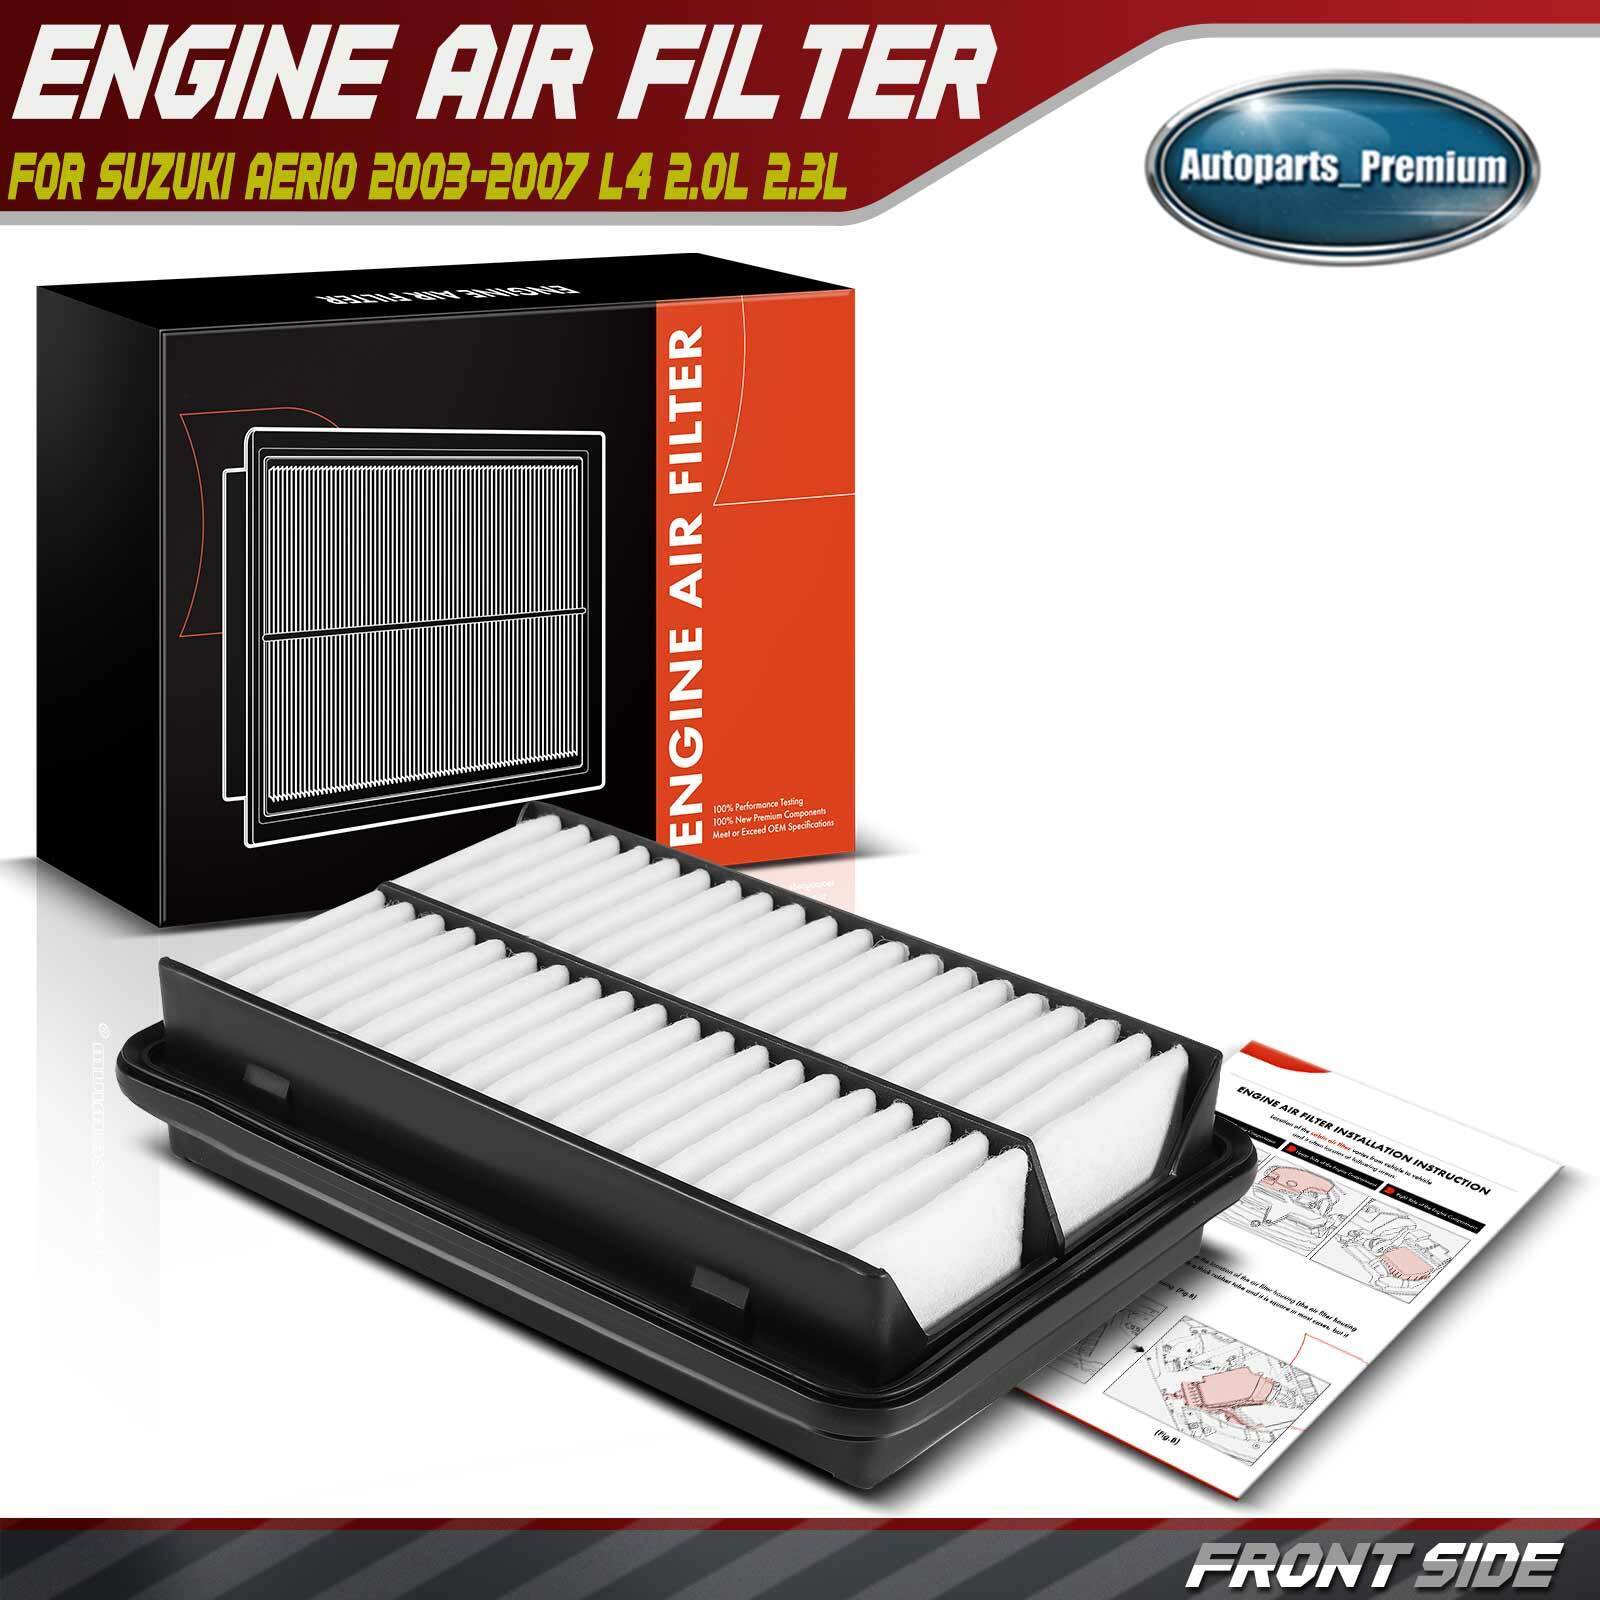 Engine Air Filter for Suzuki Aerio 2003 2004 2005 2006 2007 2.0L 2.3L 1378054G10